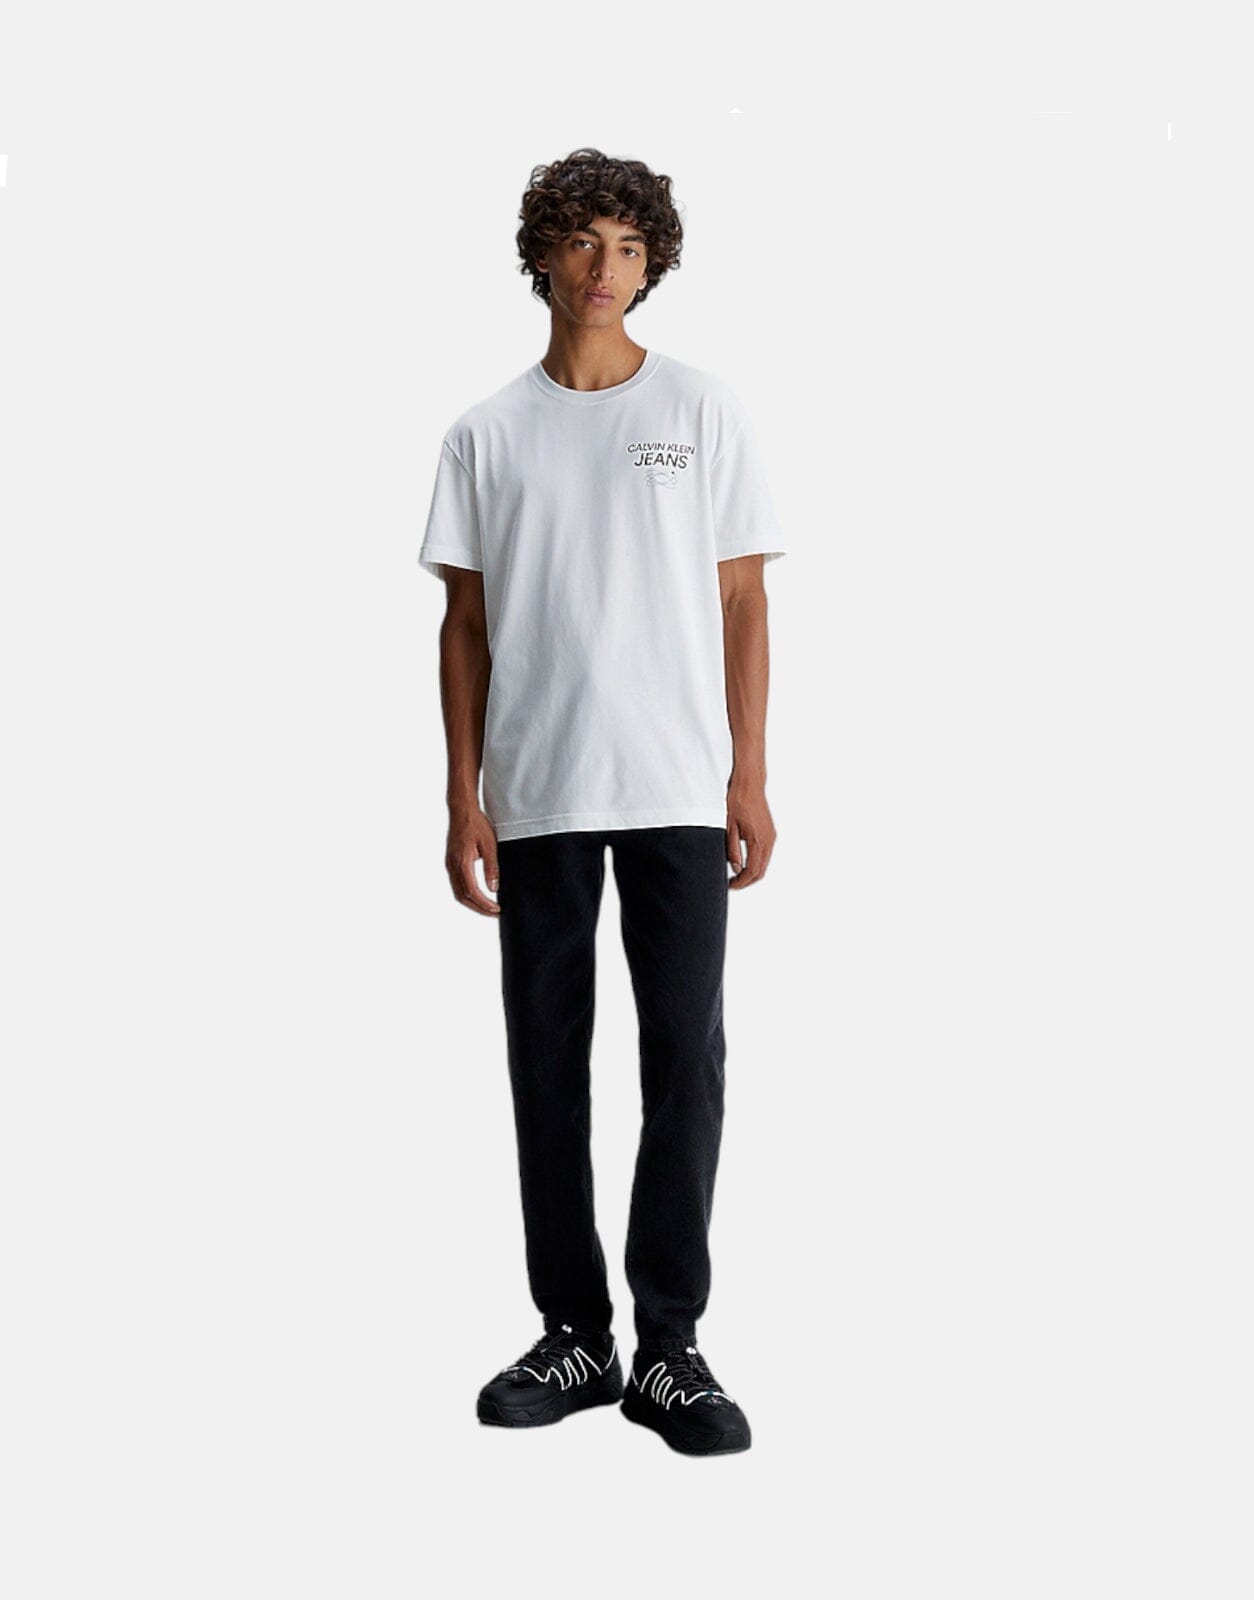 Calvin Klein Future Galaxy Graphic White T-Shirt - Subwear